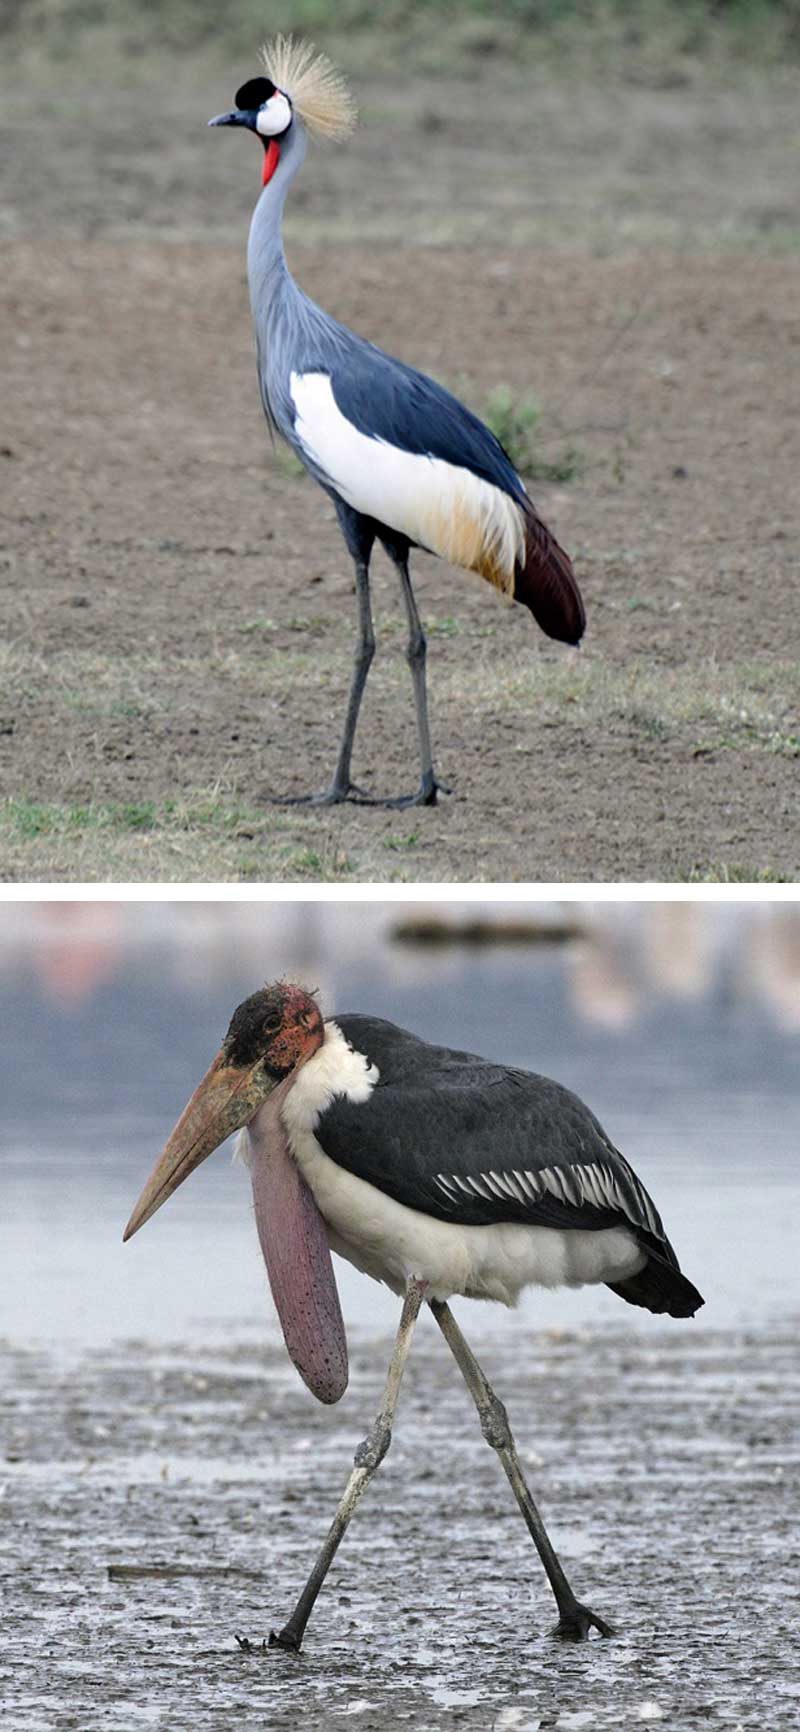 Fakta: Den grå trane er Ugandas nationalfugl. Maraboustorken er den mest almindelige fugl i landet.